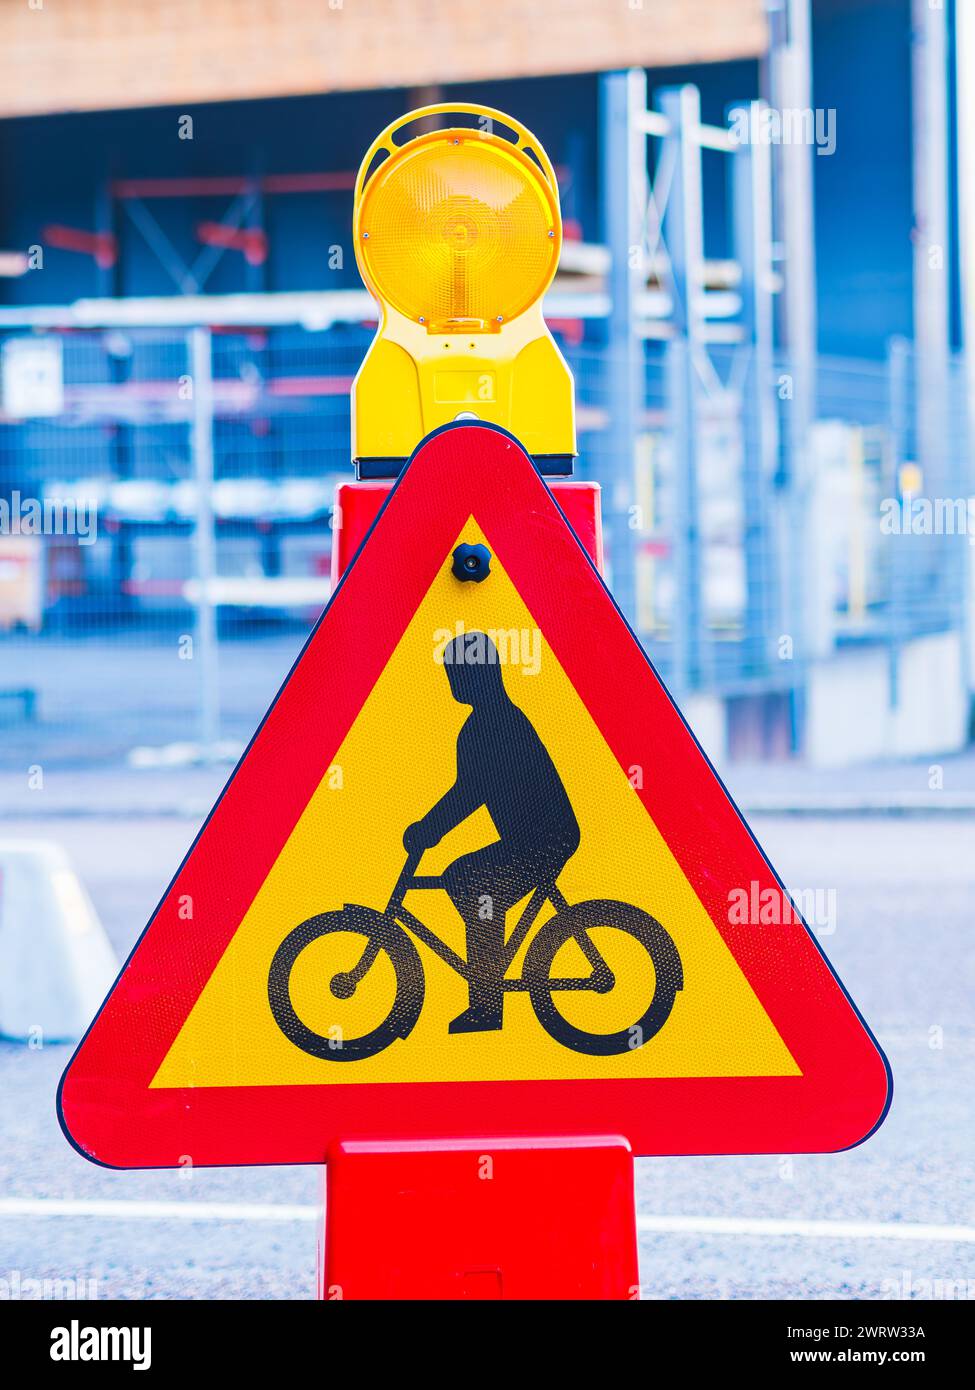 Am Straßenrand befindet sich ein gelbes und rotes Warnschild. Das Zeichen ist wahrscheinlich vorhanden, um Radfahrer vor potenziellen Gefahren zu warnen. Stockfoto